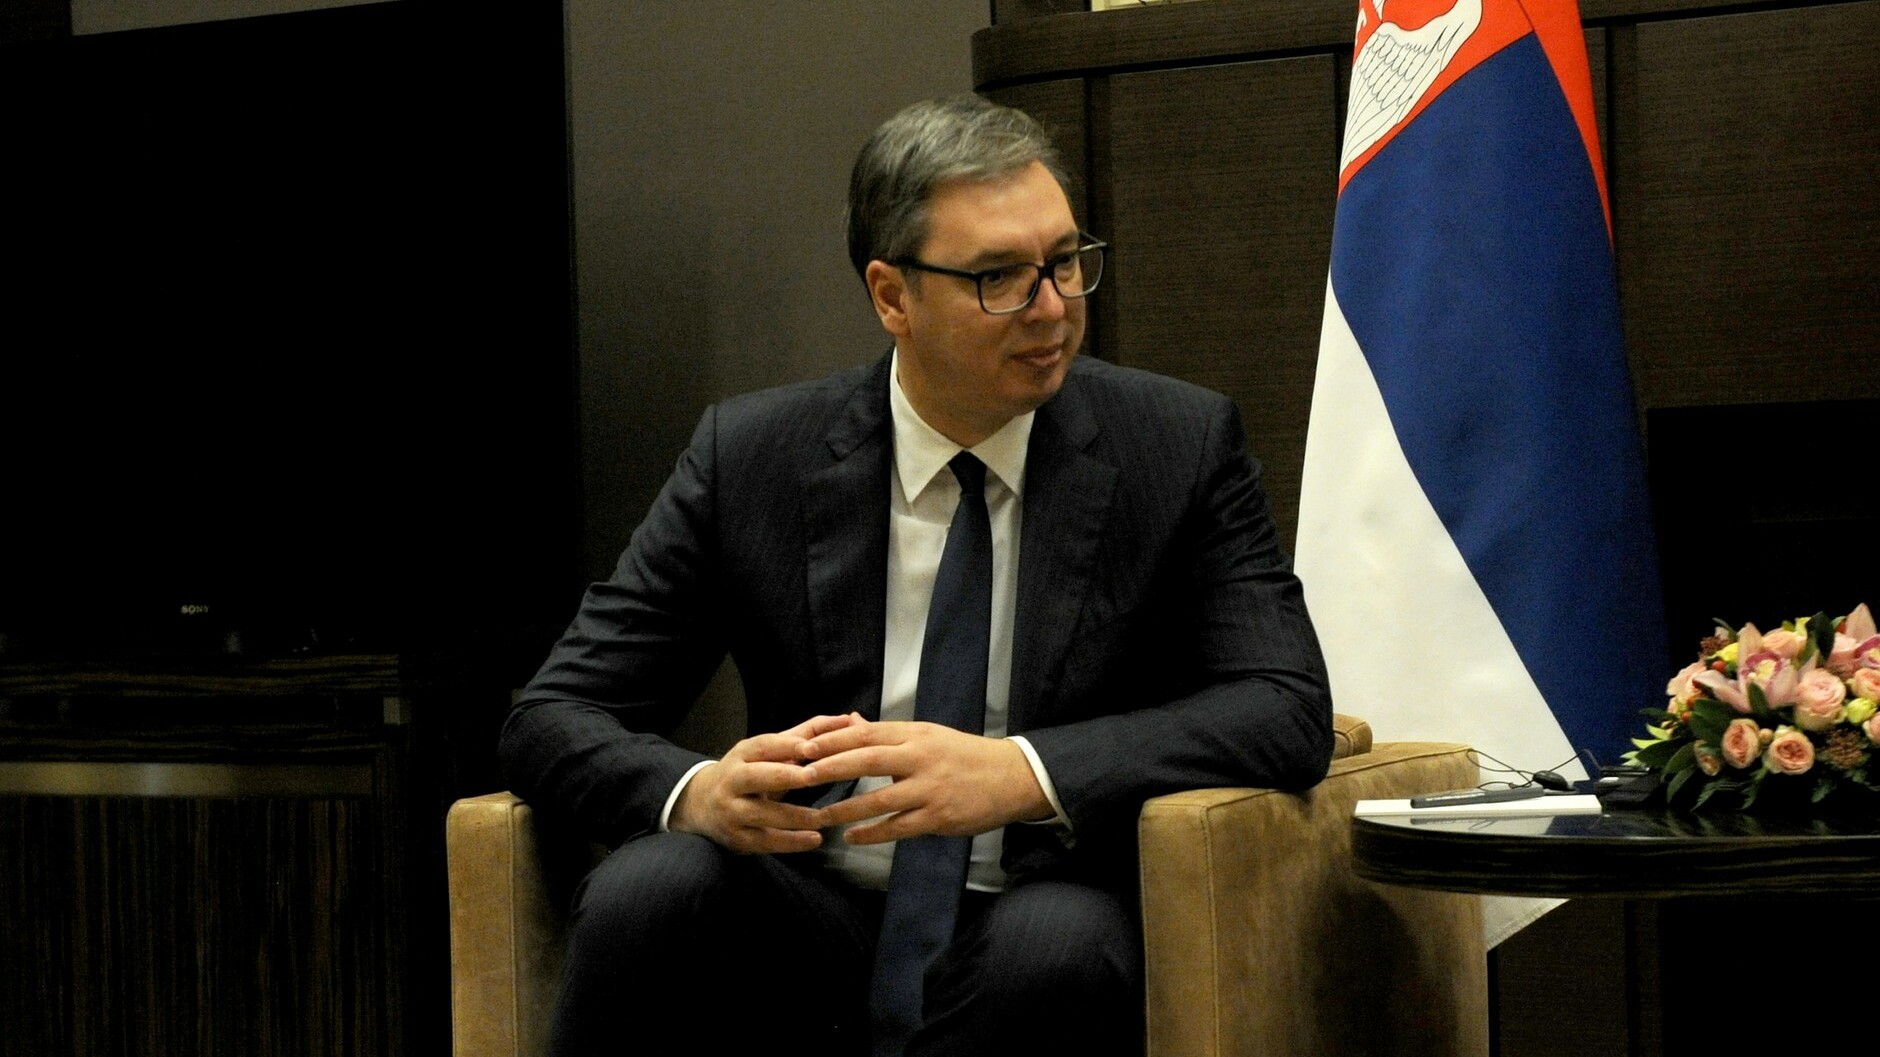 Вучич: Сербия просит помощи у Китая при проблемах из-за давления со всех сторон